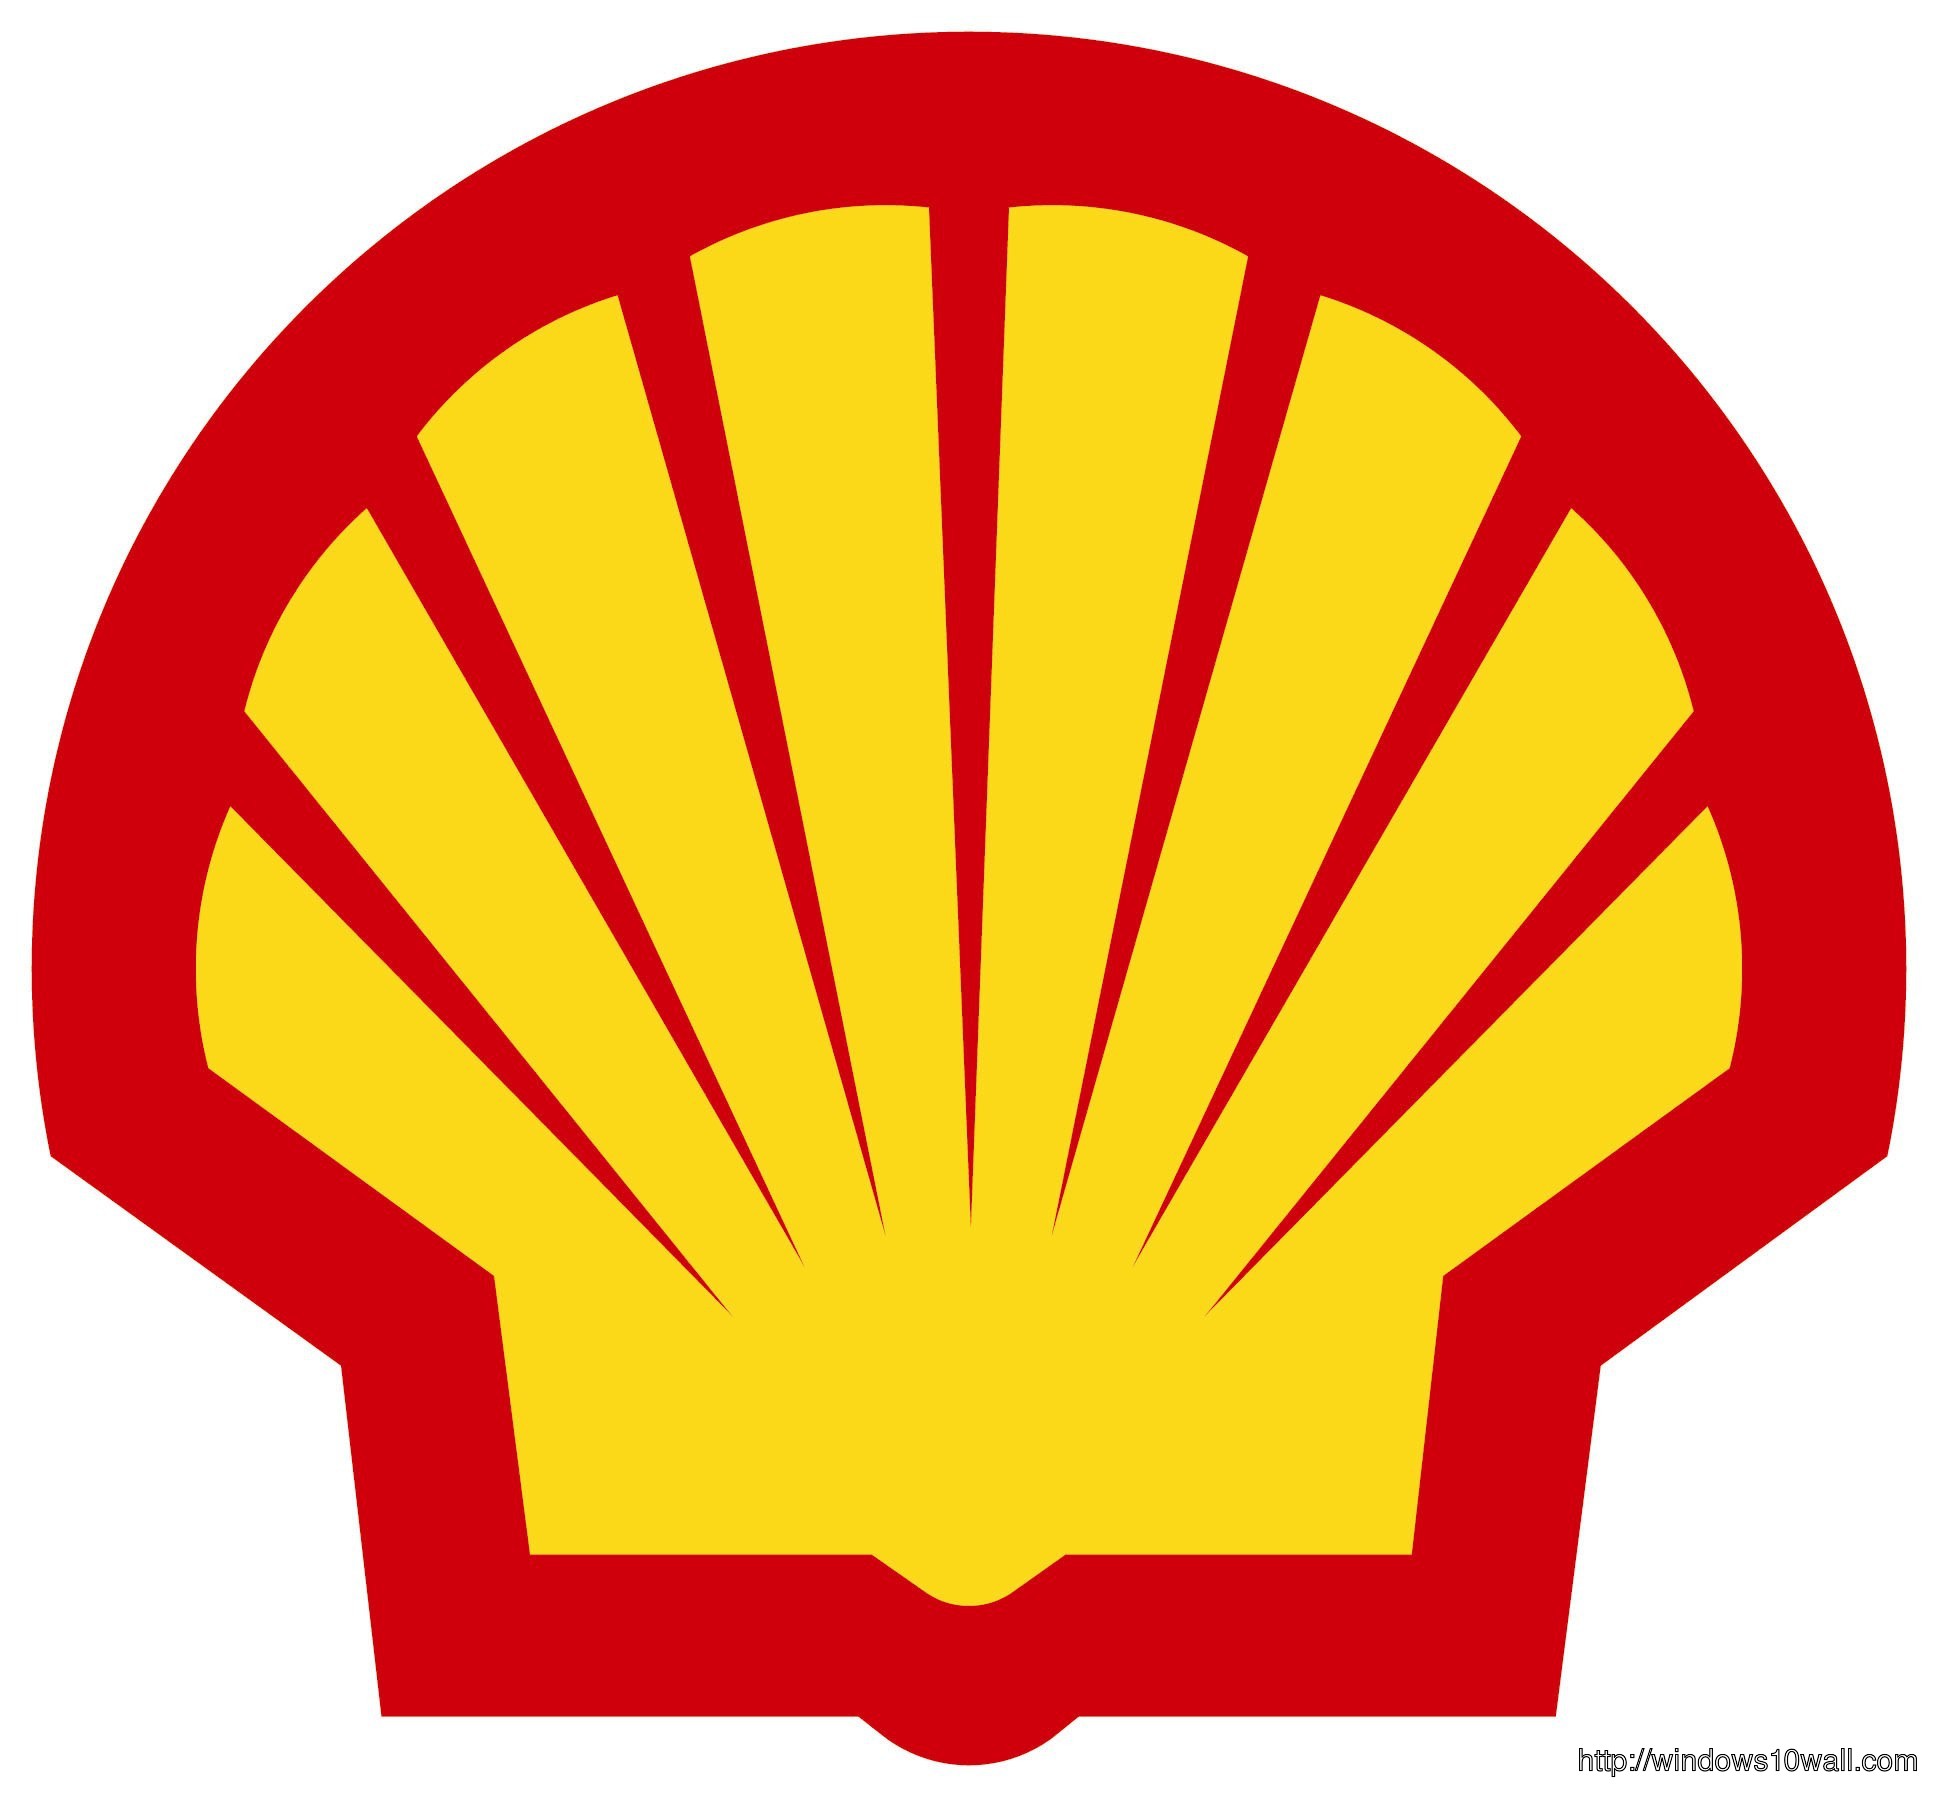 Shell logo Background Wallpaper